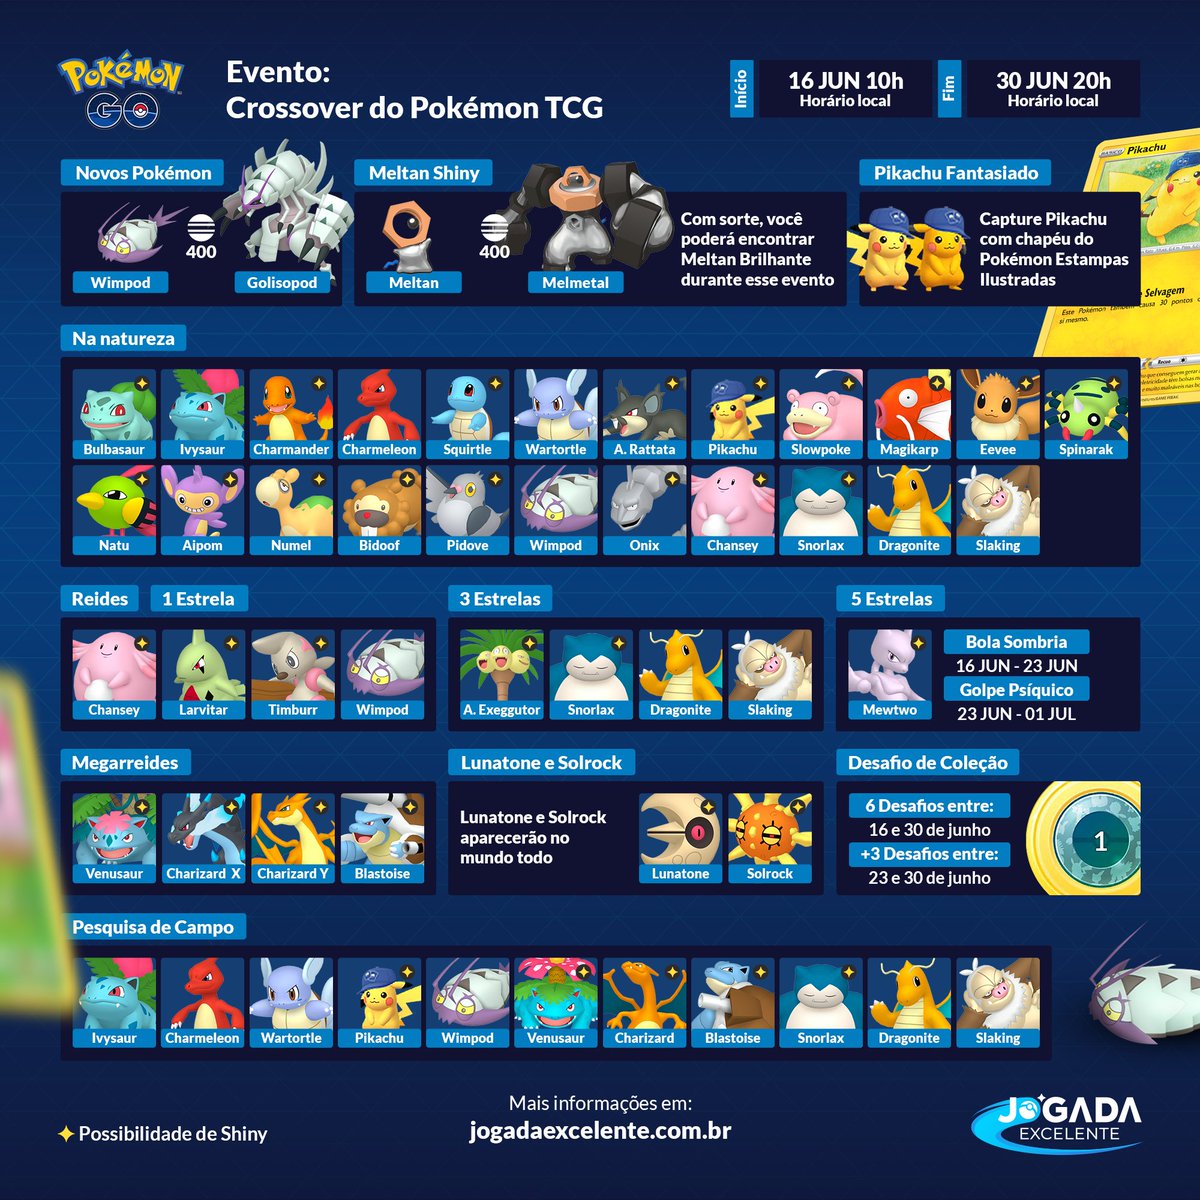 Mais informações sobre o evento Pokémon - Jogada Excelente